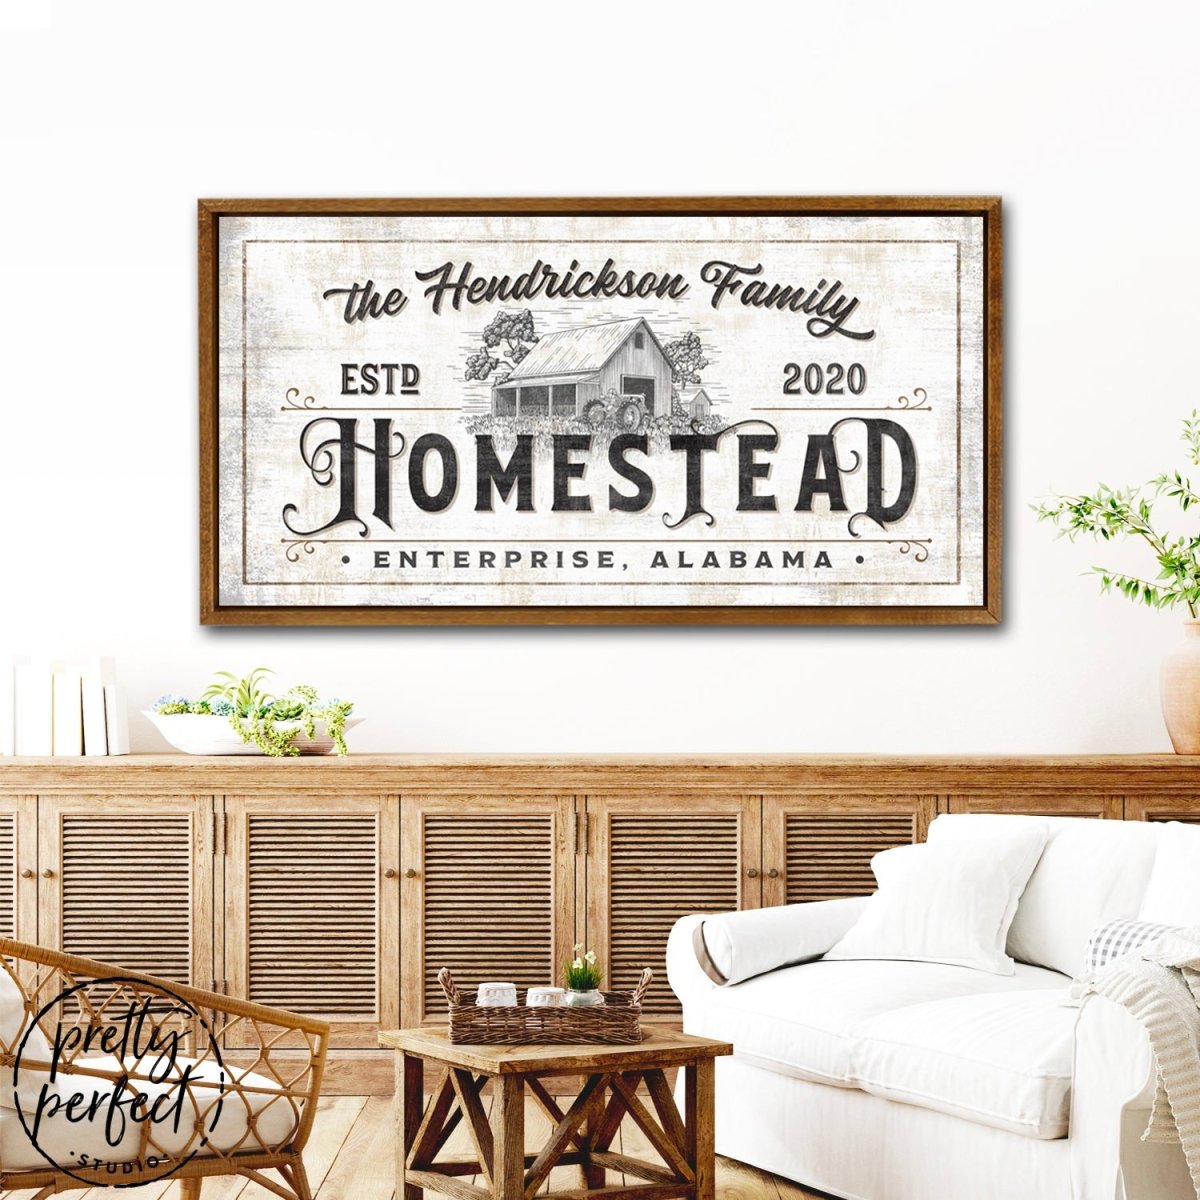 Personalized Farmhouse Homestead Sign freeshipping - Pretty Perfect Studio